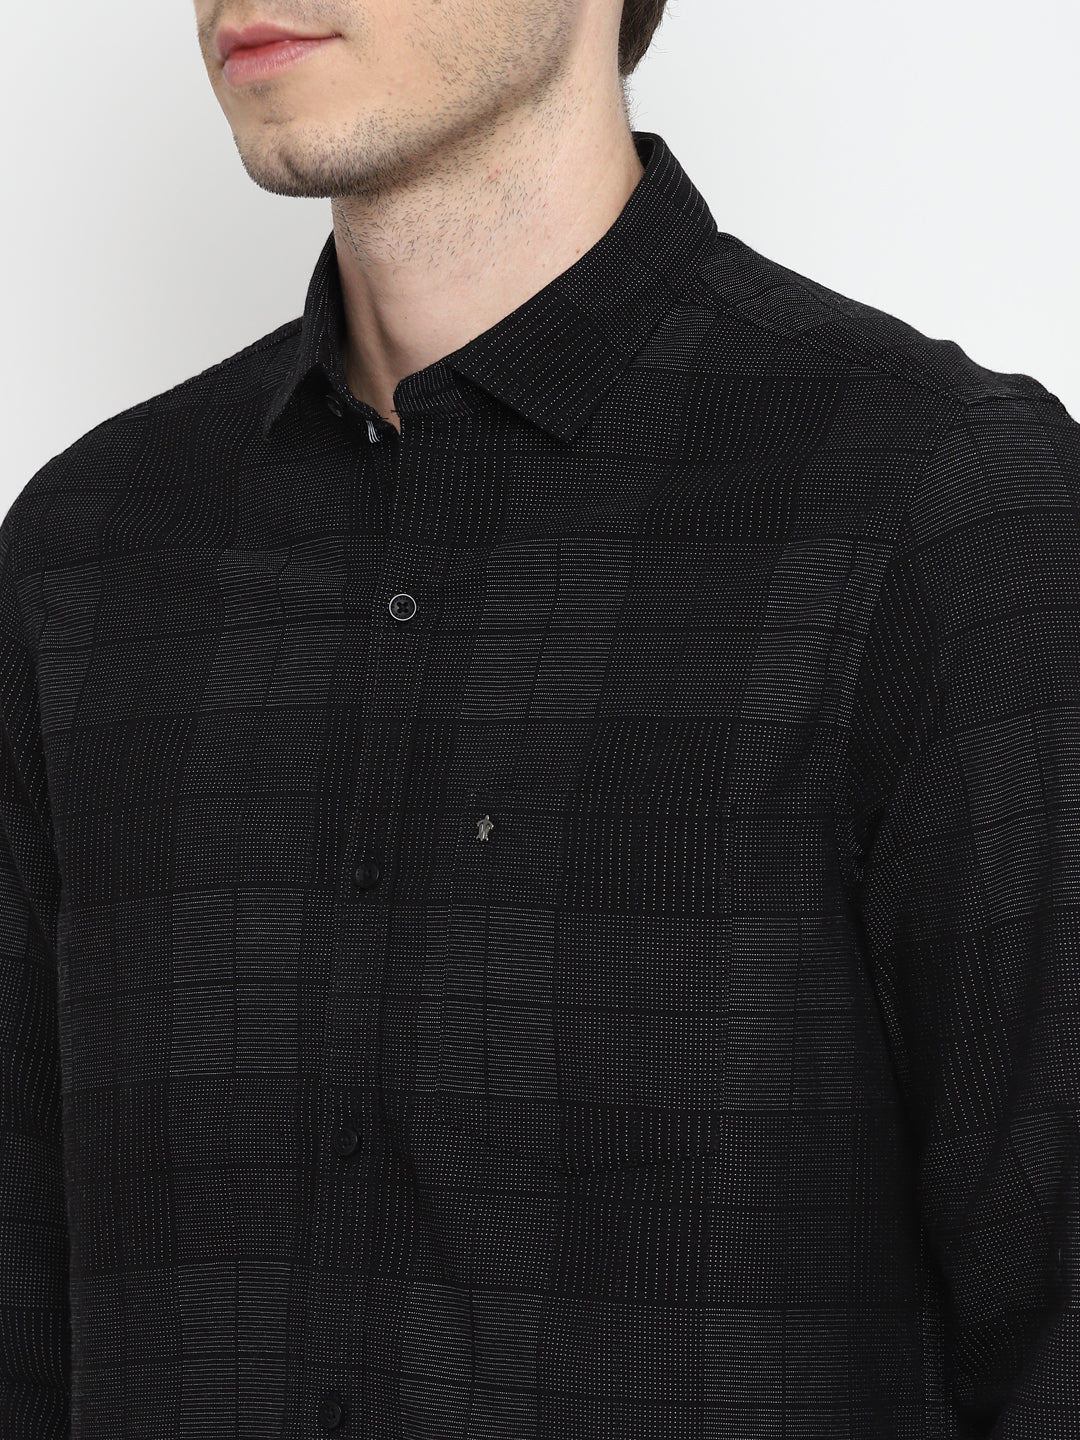 Self Design Black Slim Fit Causal Shirt